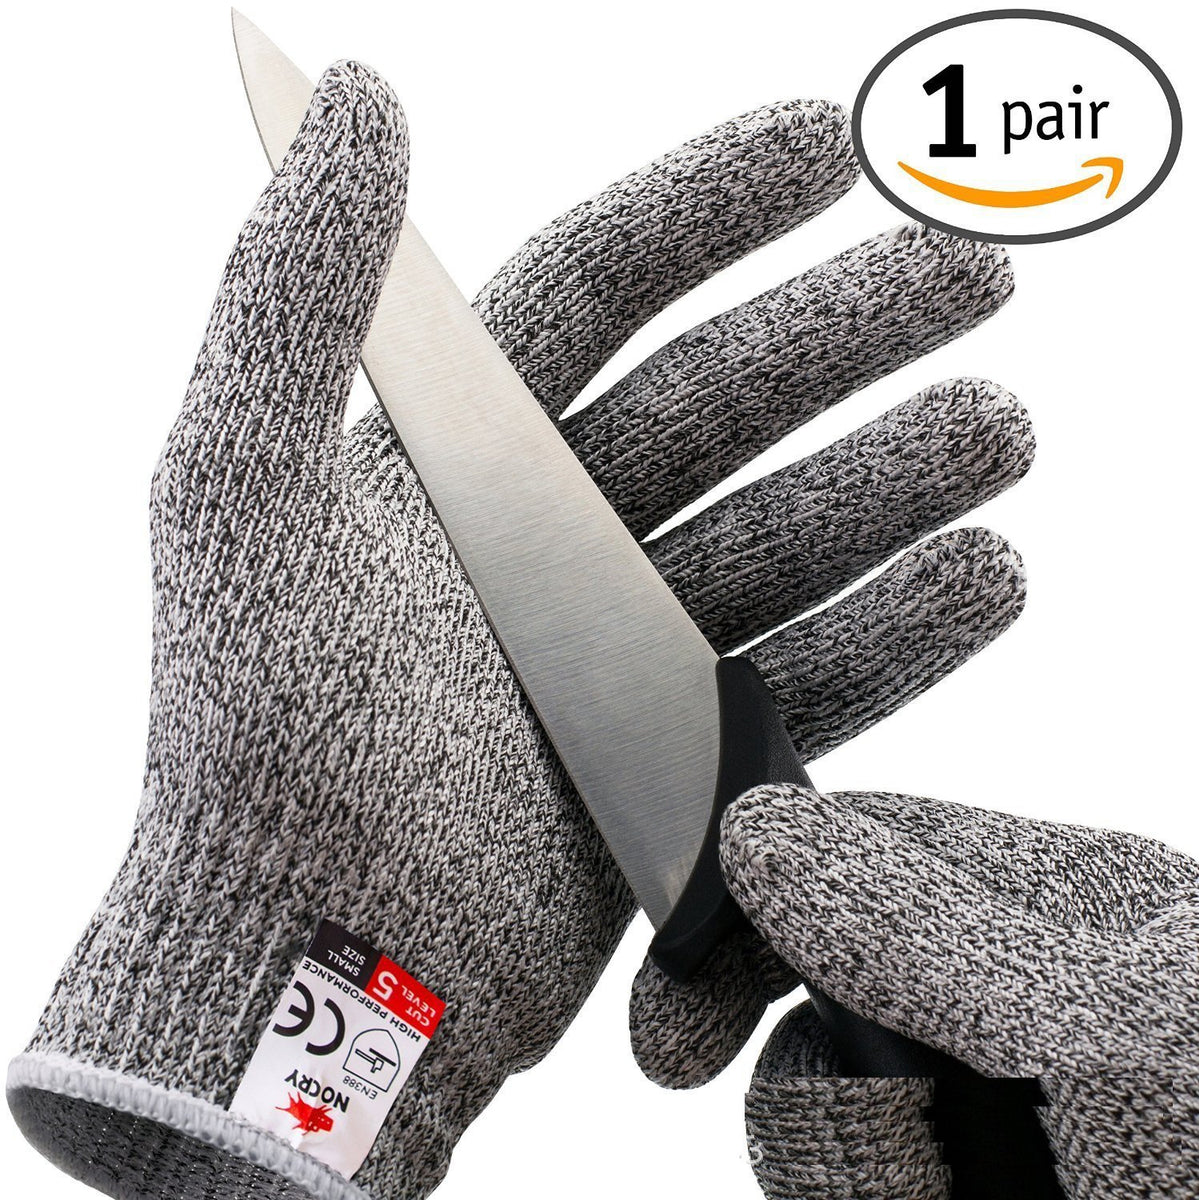 全日本送料無料 軍手 防刃 手袋 作業用 DIY 切れない 安全防護 サイズ M 作業 グローブ